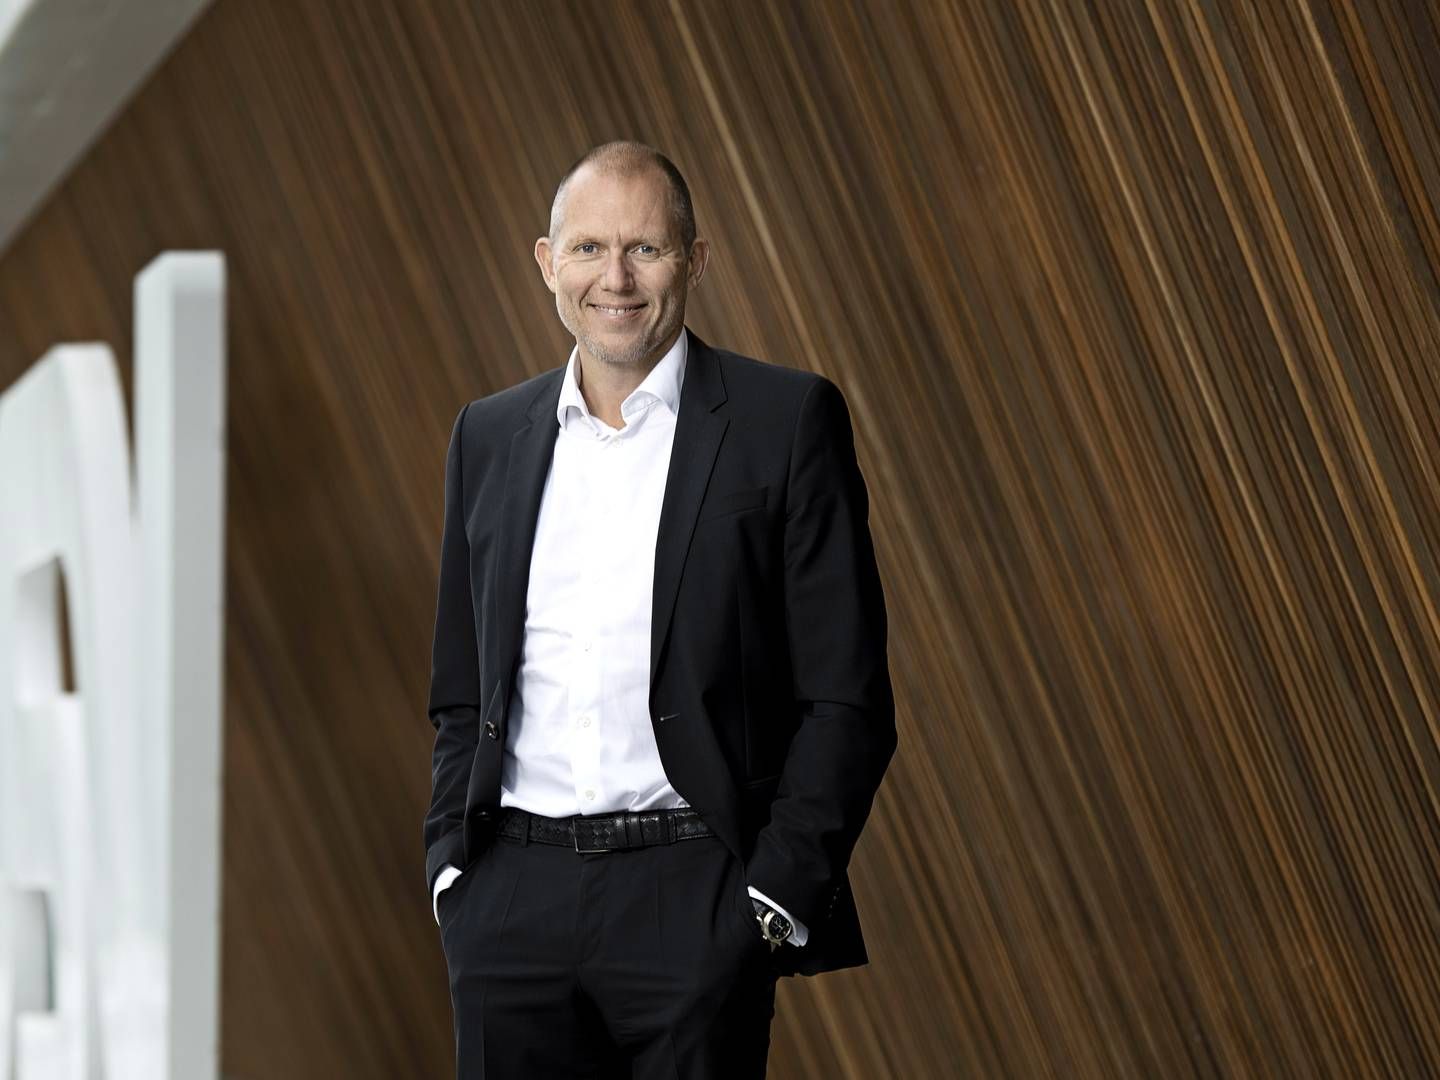 Jens Bjørn Andersen, CEO, DSV. | Photo: PR/DSV